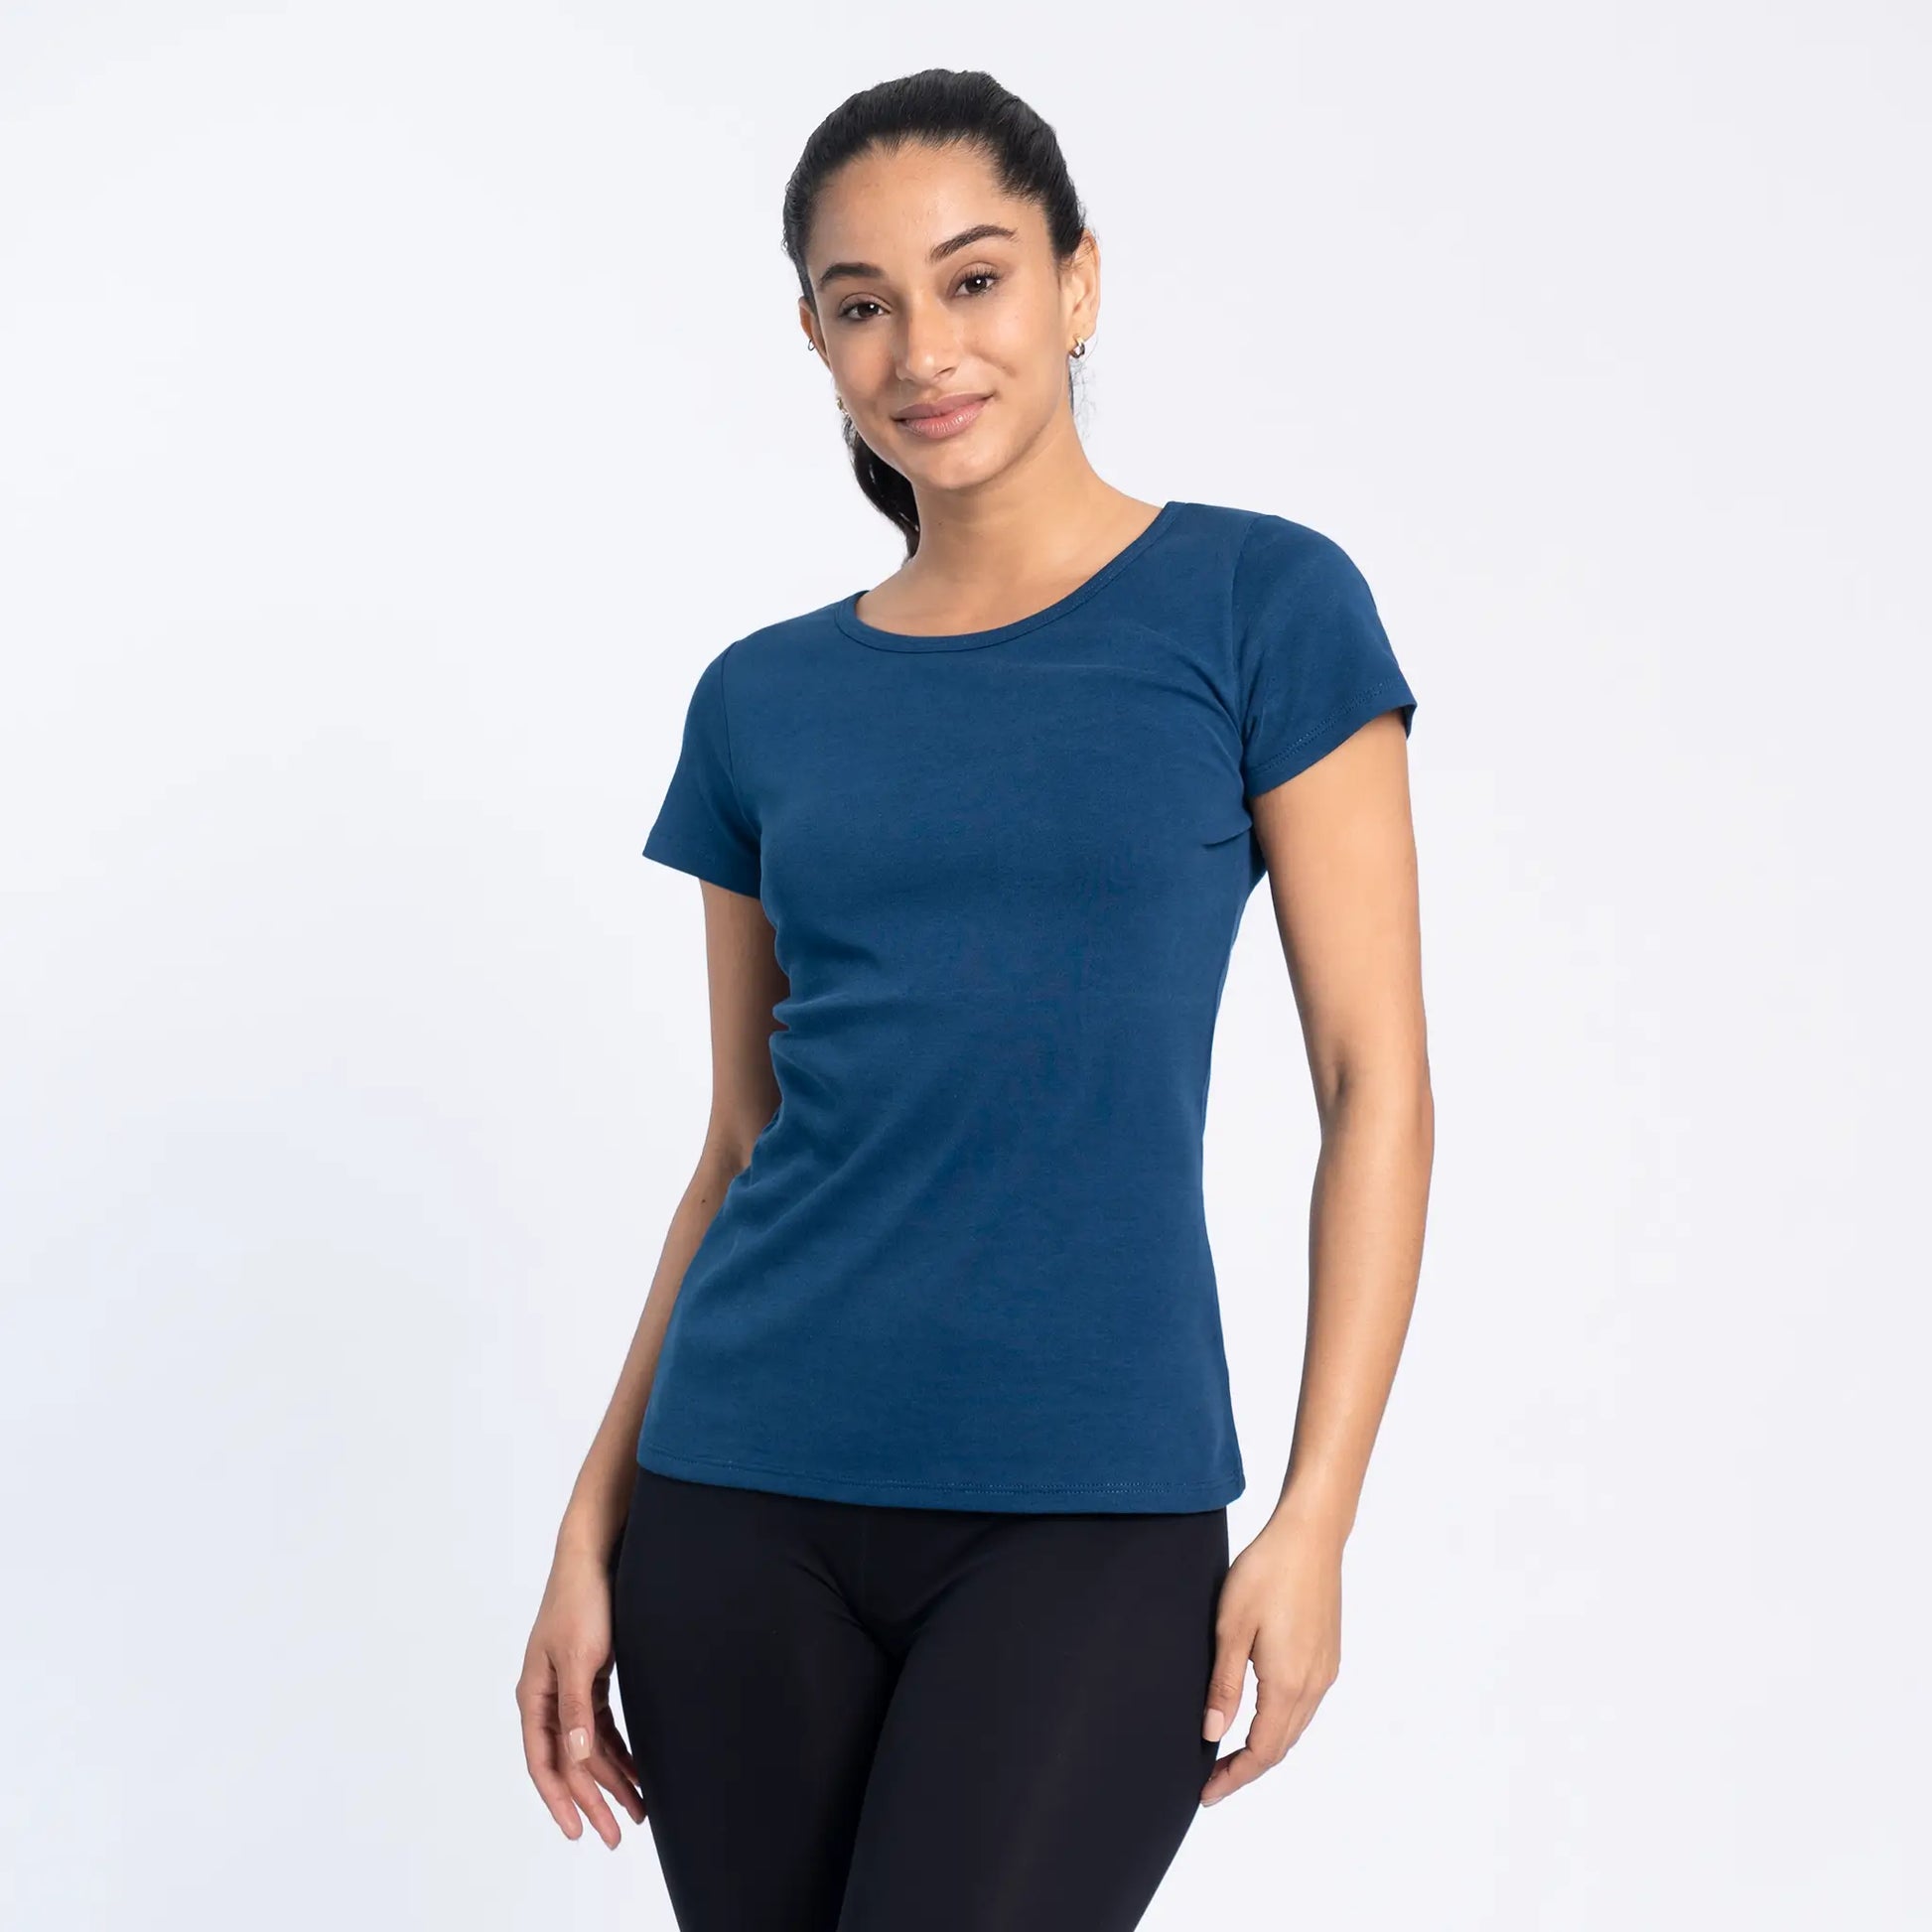 AYA Eco Fashion Organic Pima Cotton T-Shirt for Women's - Made in Peru